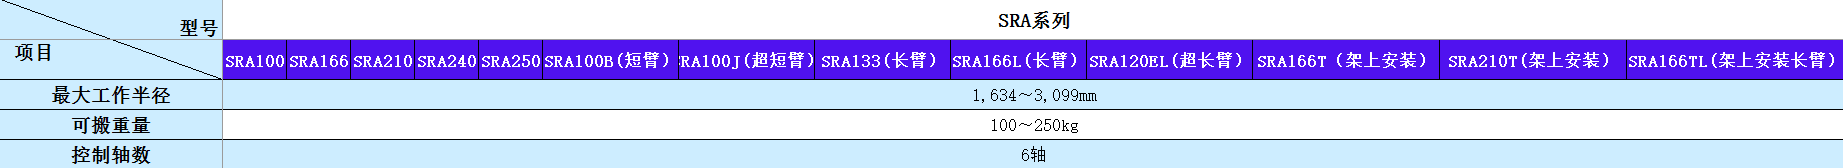 SRA系列规格.png